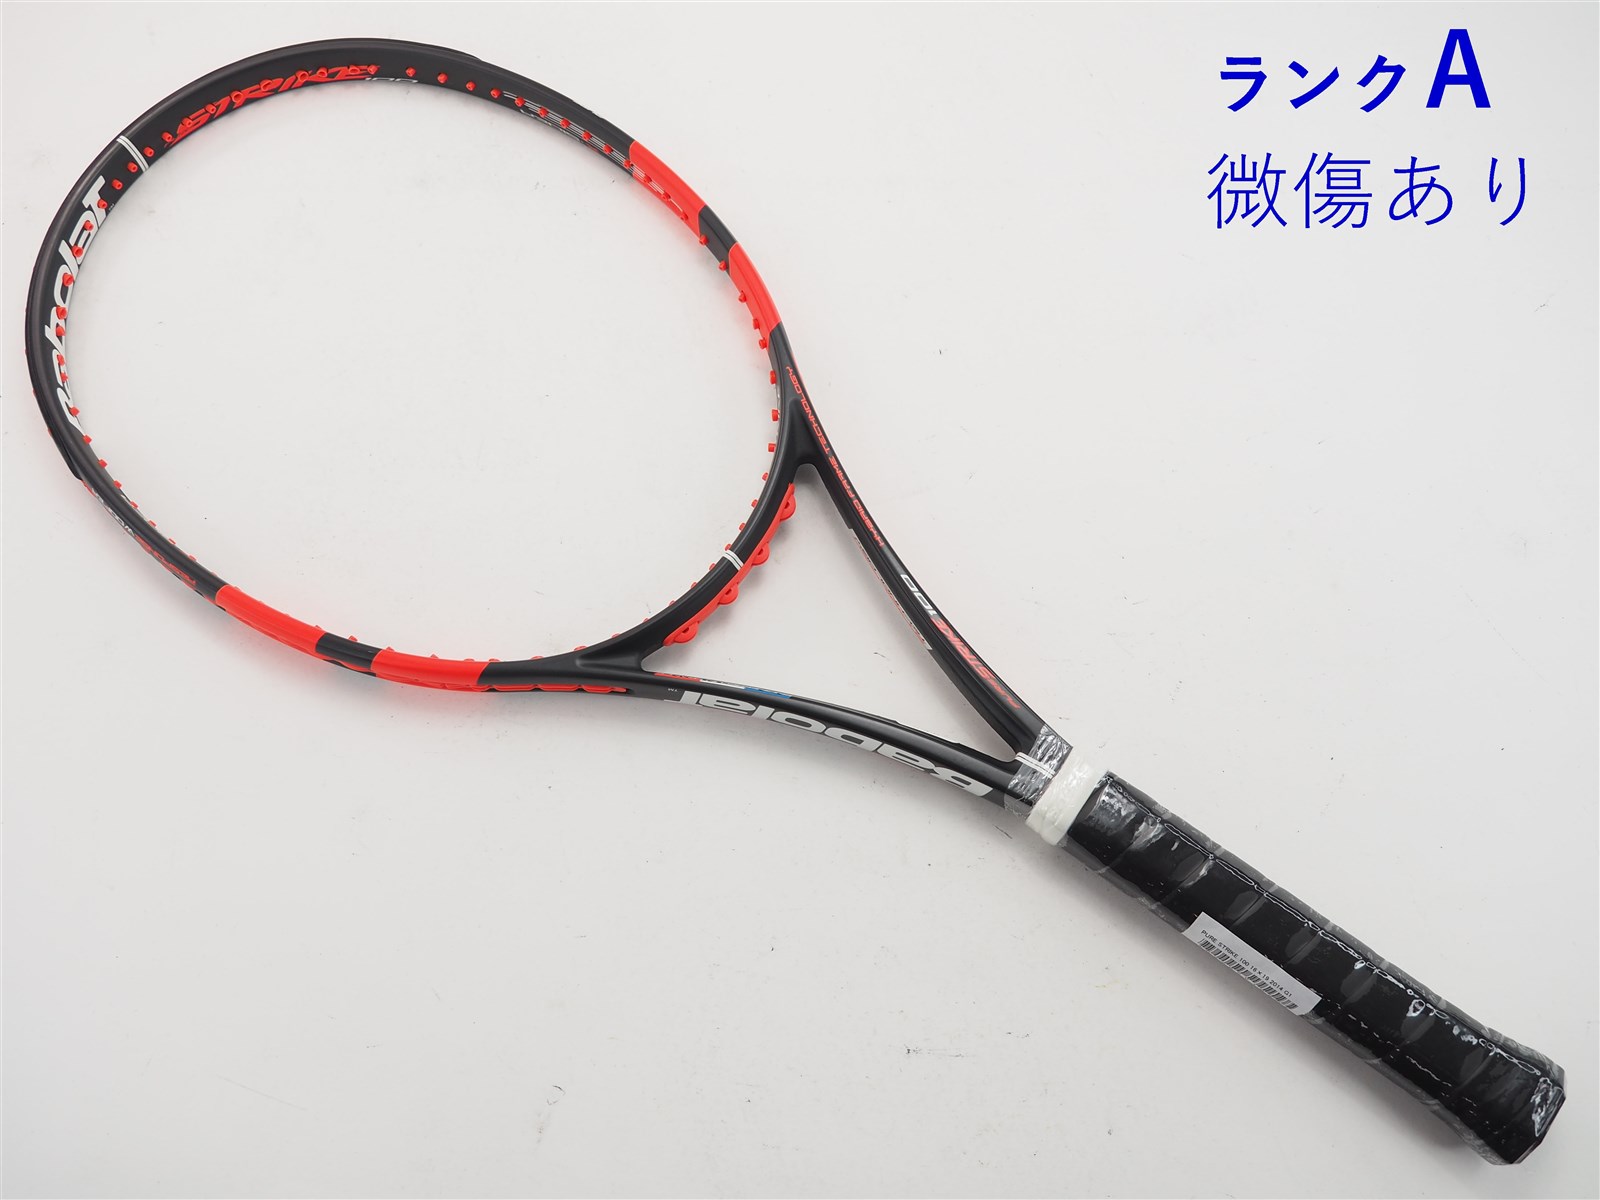 【中古】バボラ ピュア ストライク 100 16×19 2014年モデルBABOLAT PURE STRIKE 100 16×19  2014(G1)【中古 テニスラケット】【送料無料】